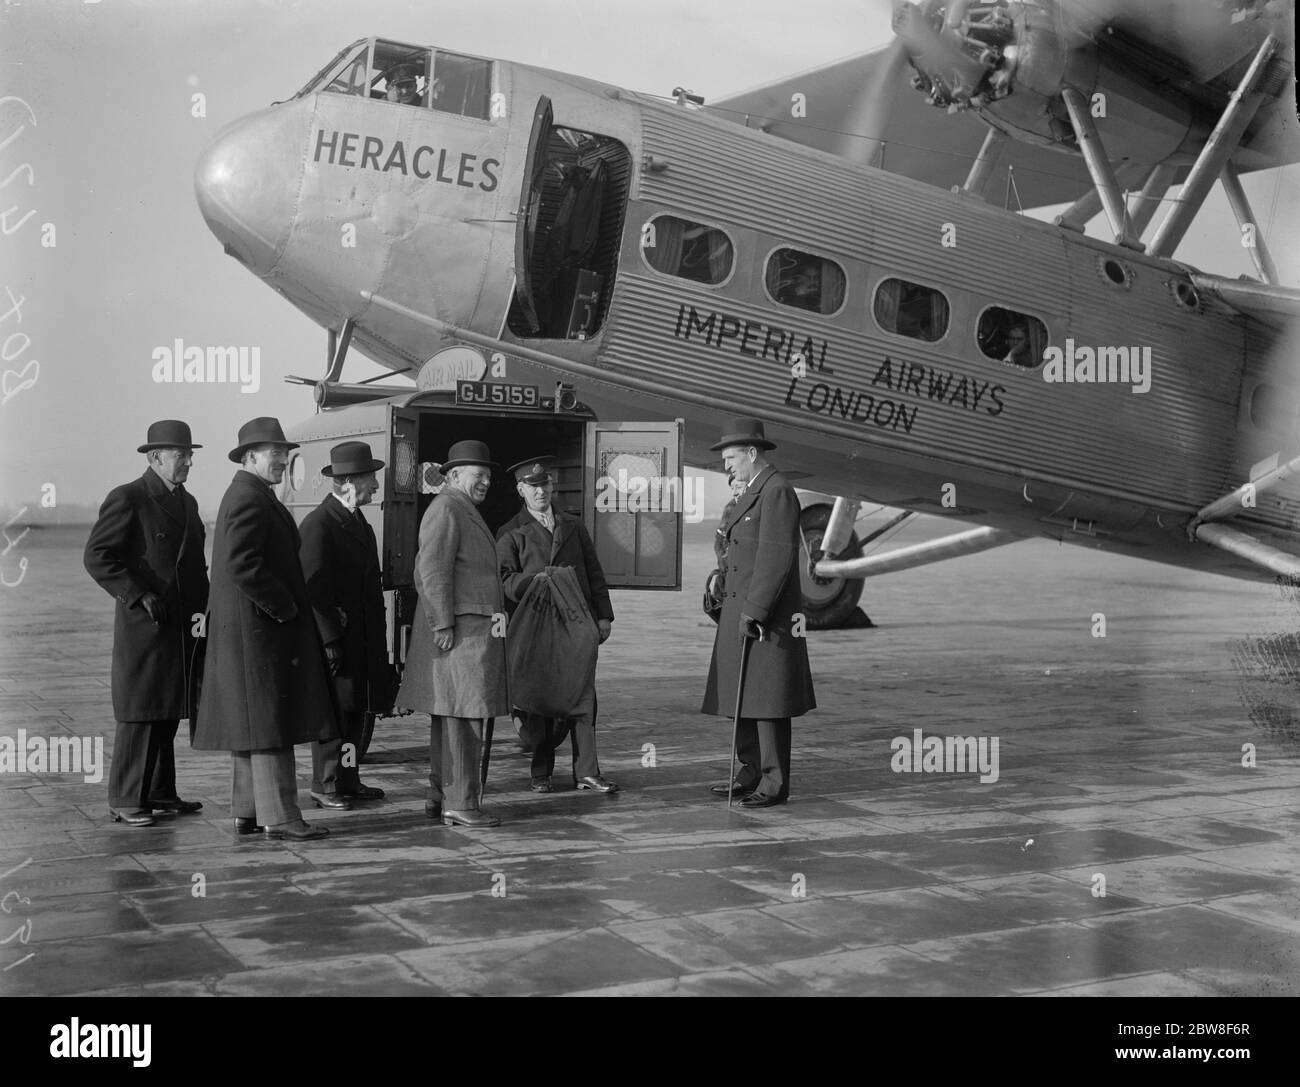 Weihnachtsmails für Südafrika . Die Postbehörden haben mit der Imperial Airways Vereinbarungen für den Versand von Weihnachtsbriefen und Paketen per Flugzeug nach Südafrika getroffen. Das Flugzeug wird in Croydon geladen. Dezember 1931 Stockfoto